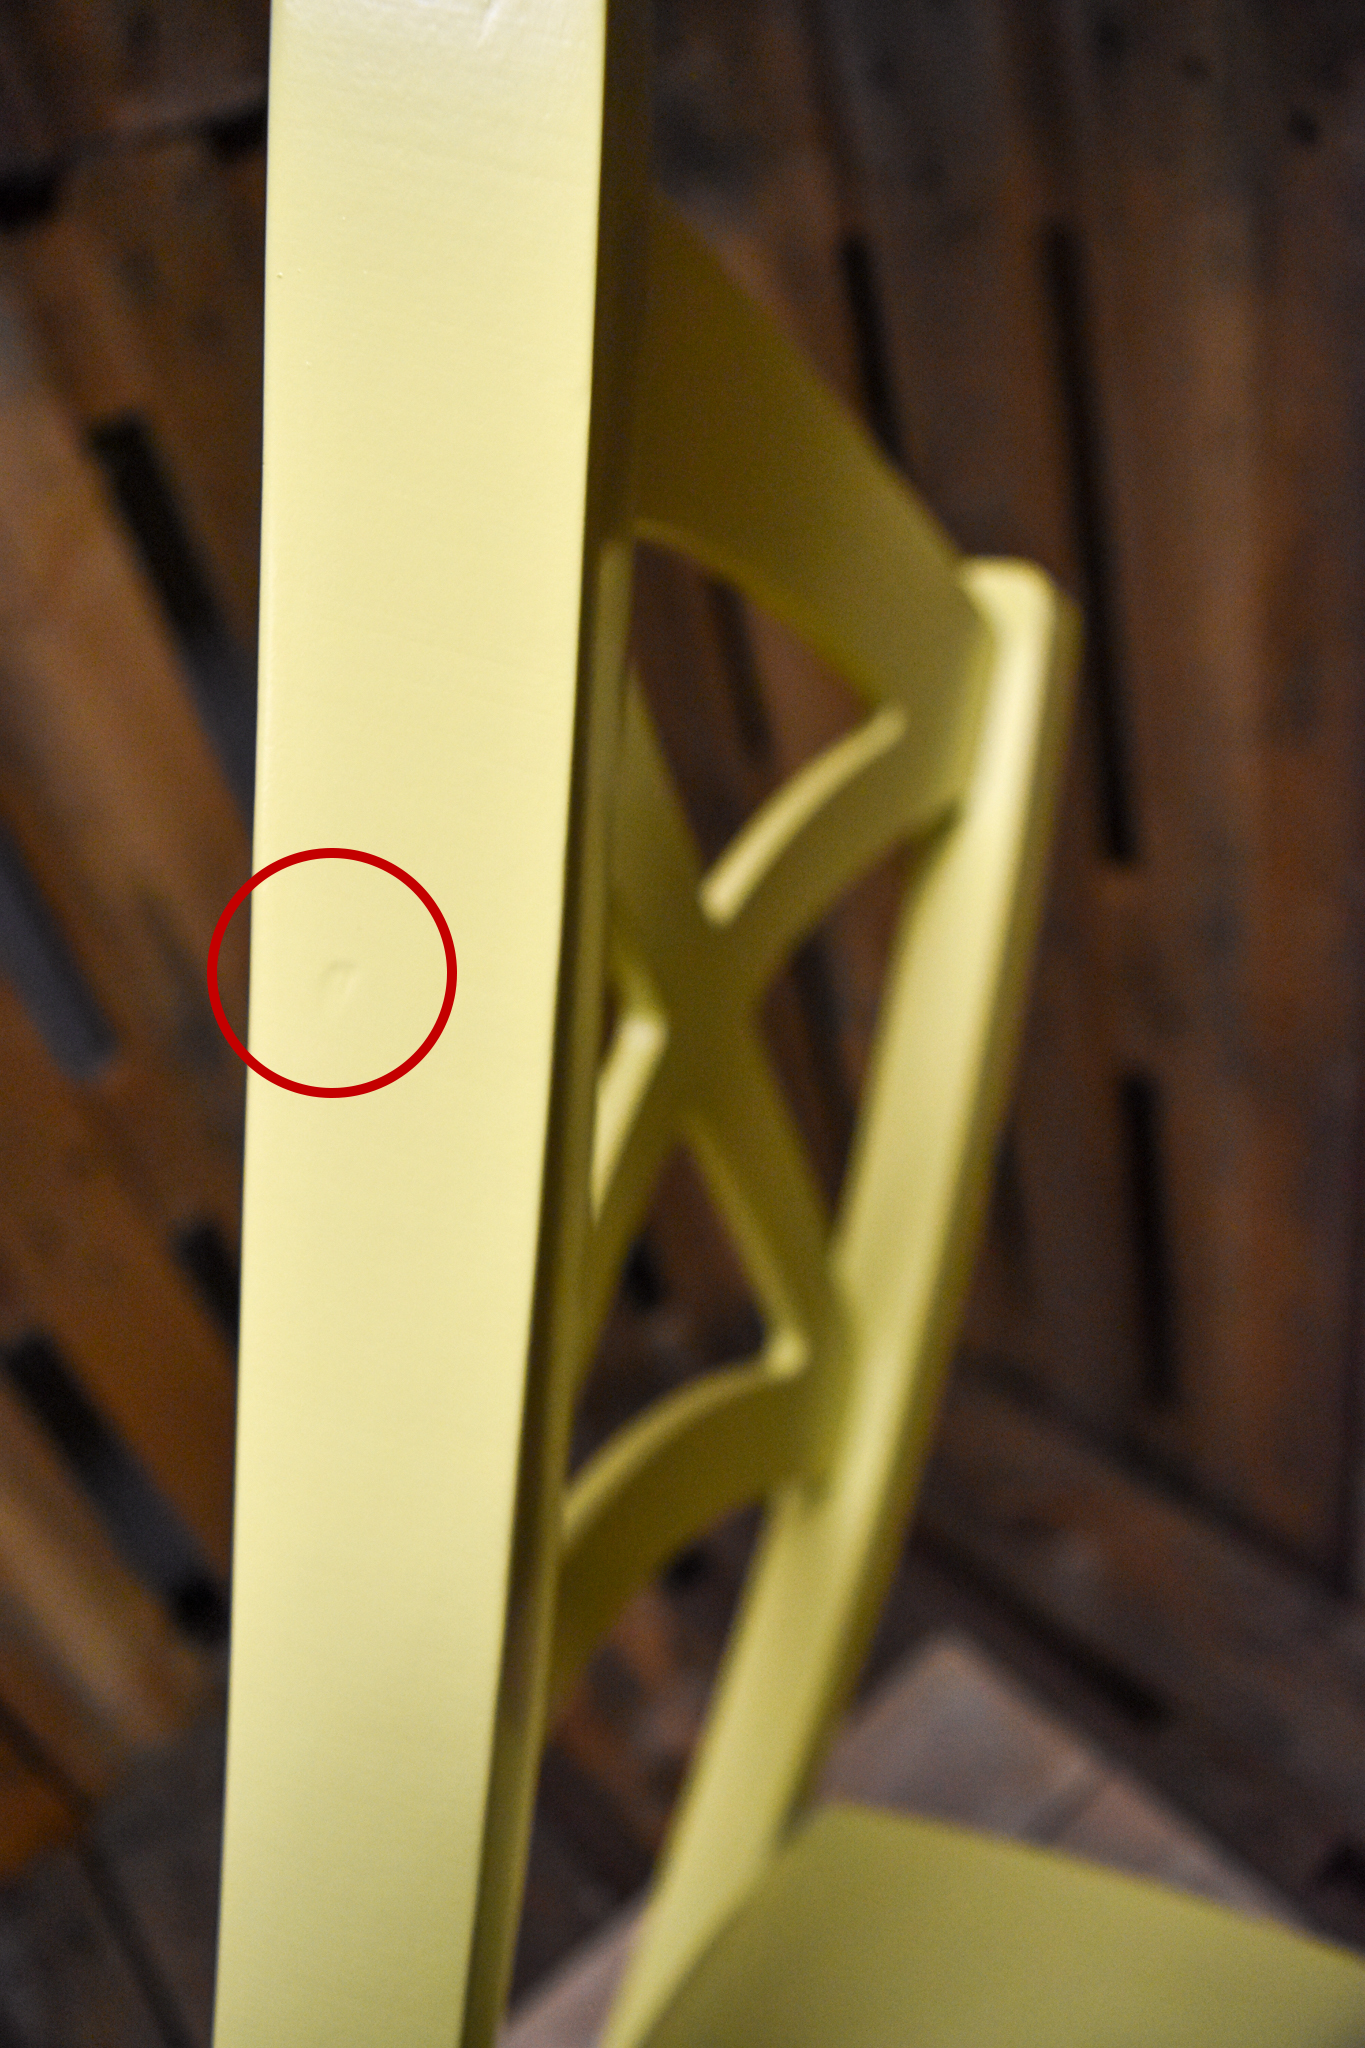 Stock sedie outlet modello 33 colore giallo seduta in legno